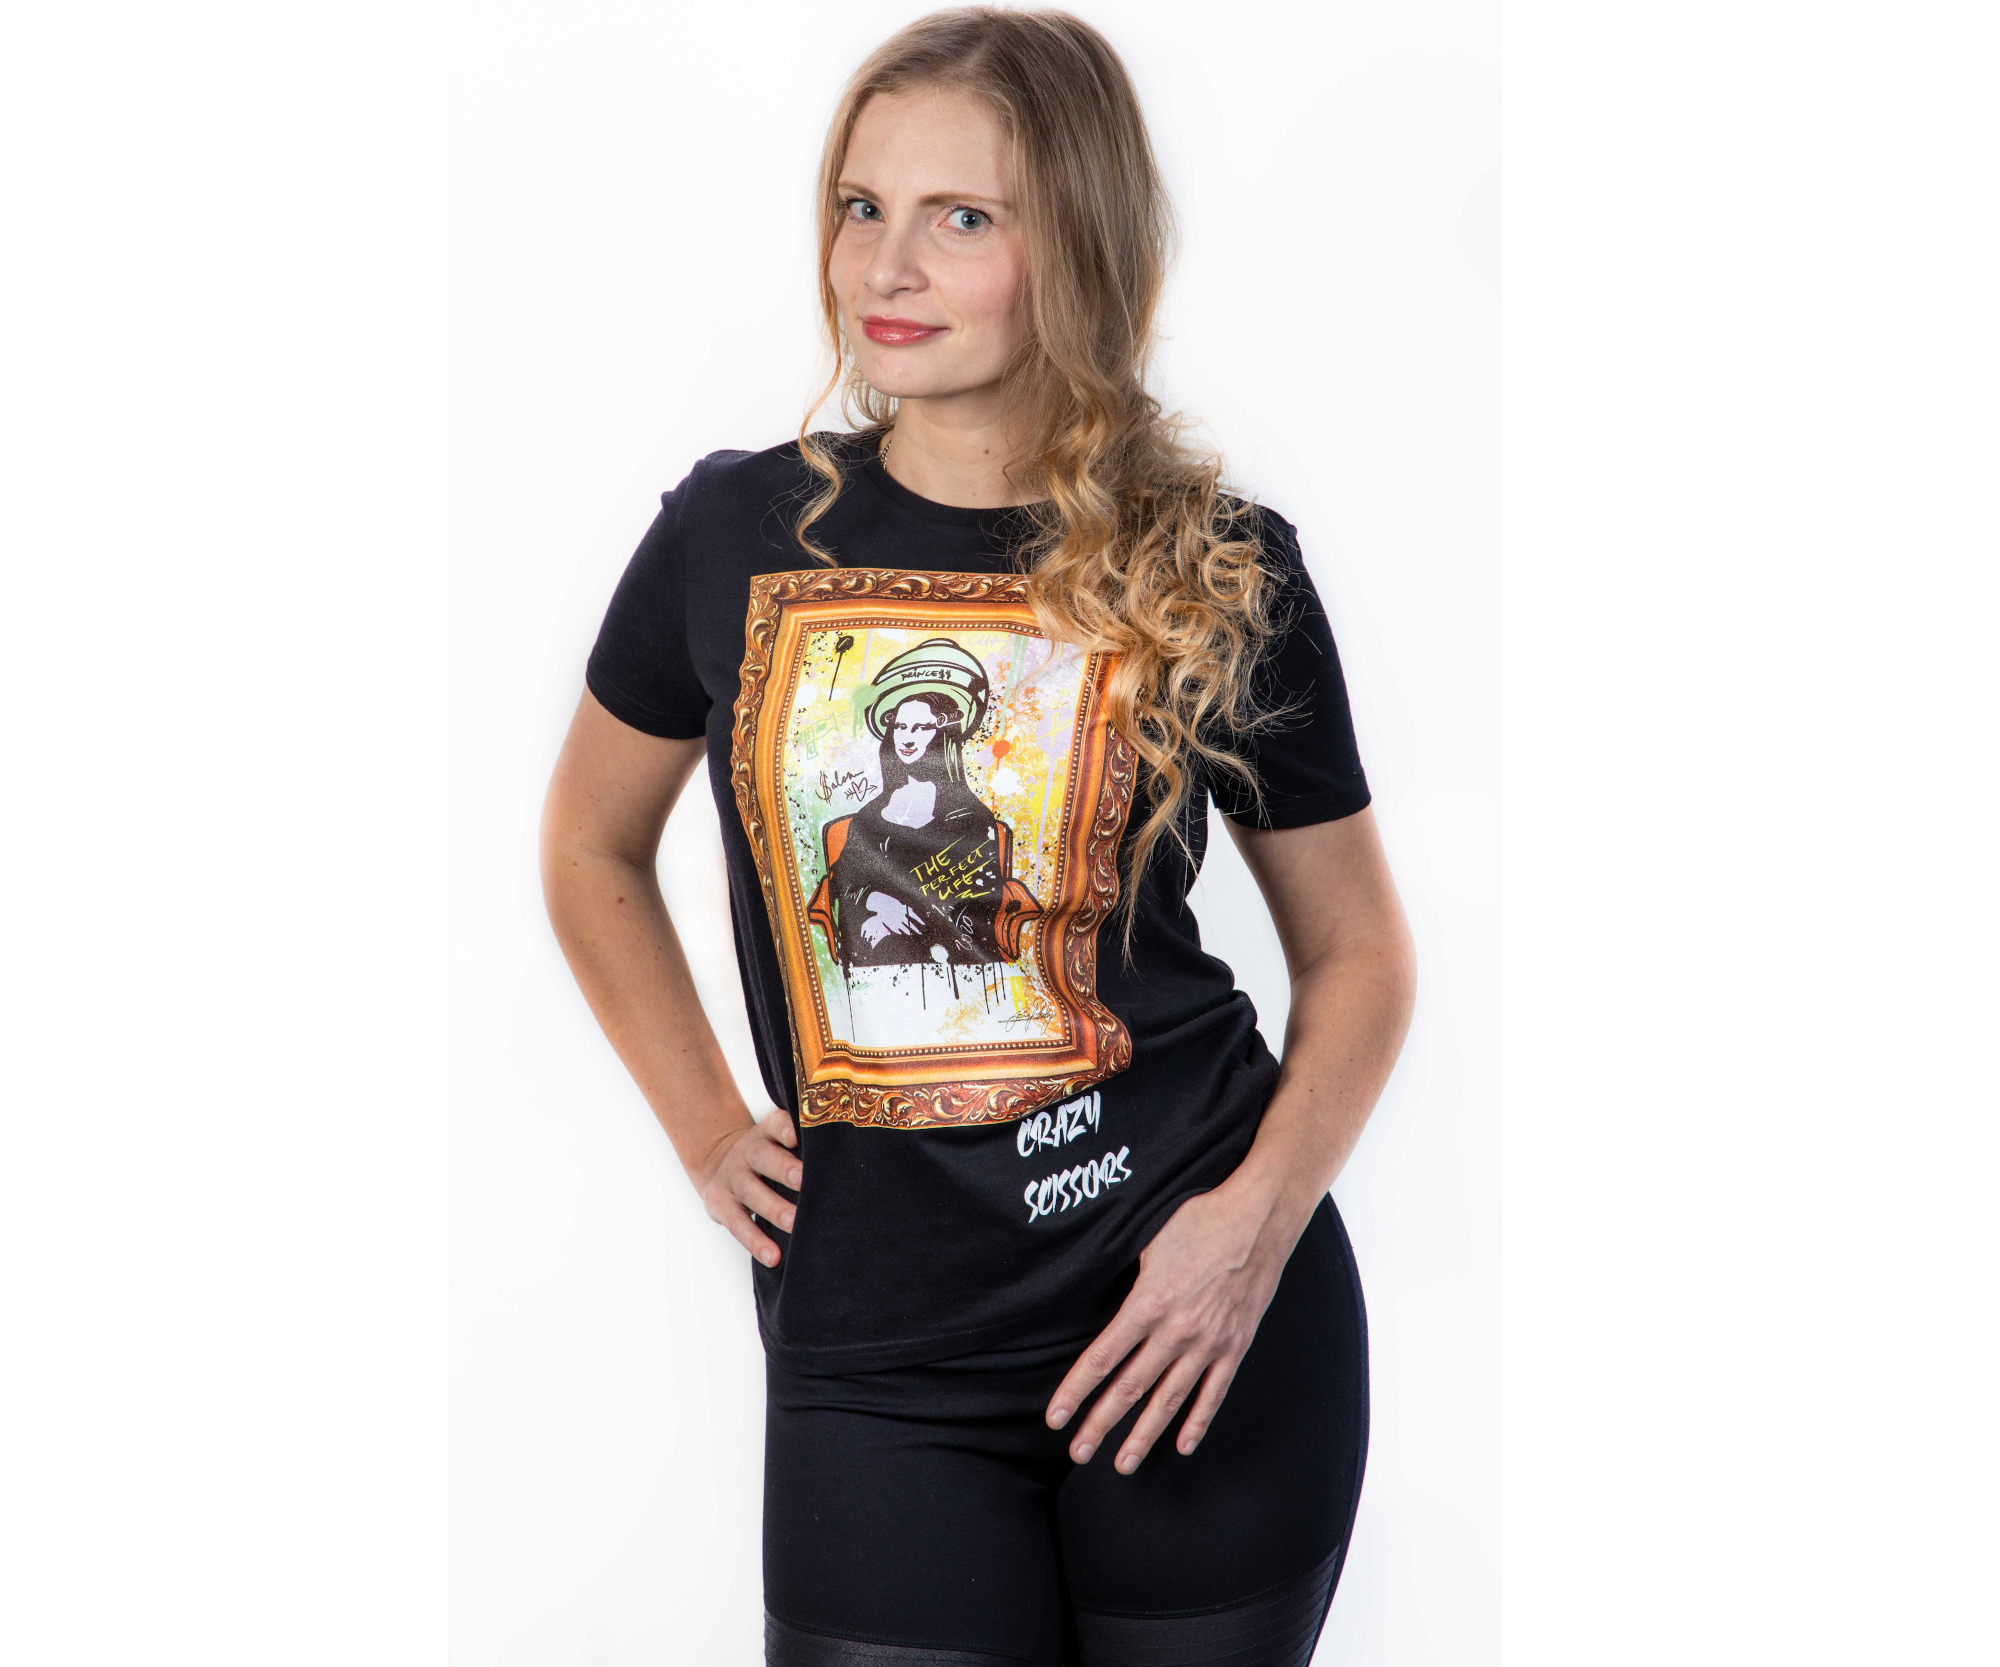 Tričko s krátkým rukávem Crazy Scissors Mona Lisa - černé, S + DÁREK ZDARMA